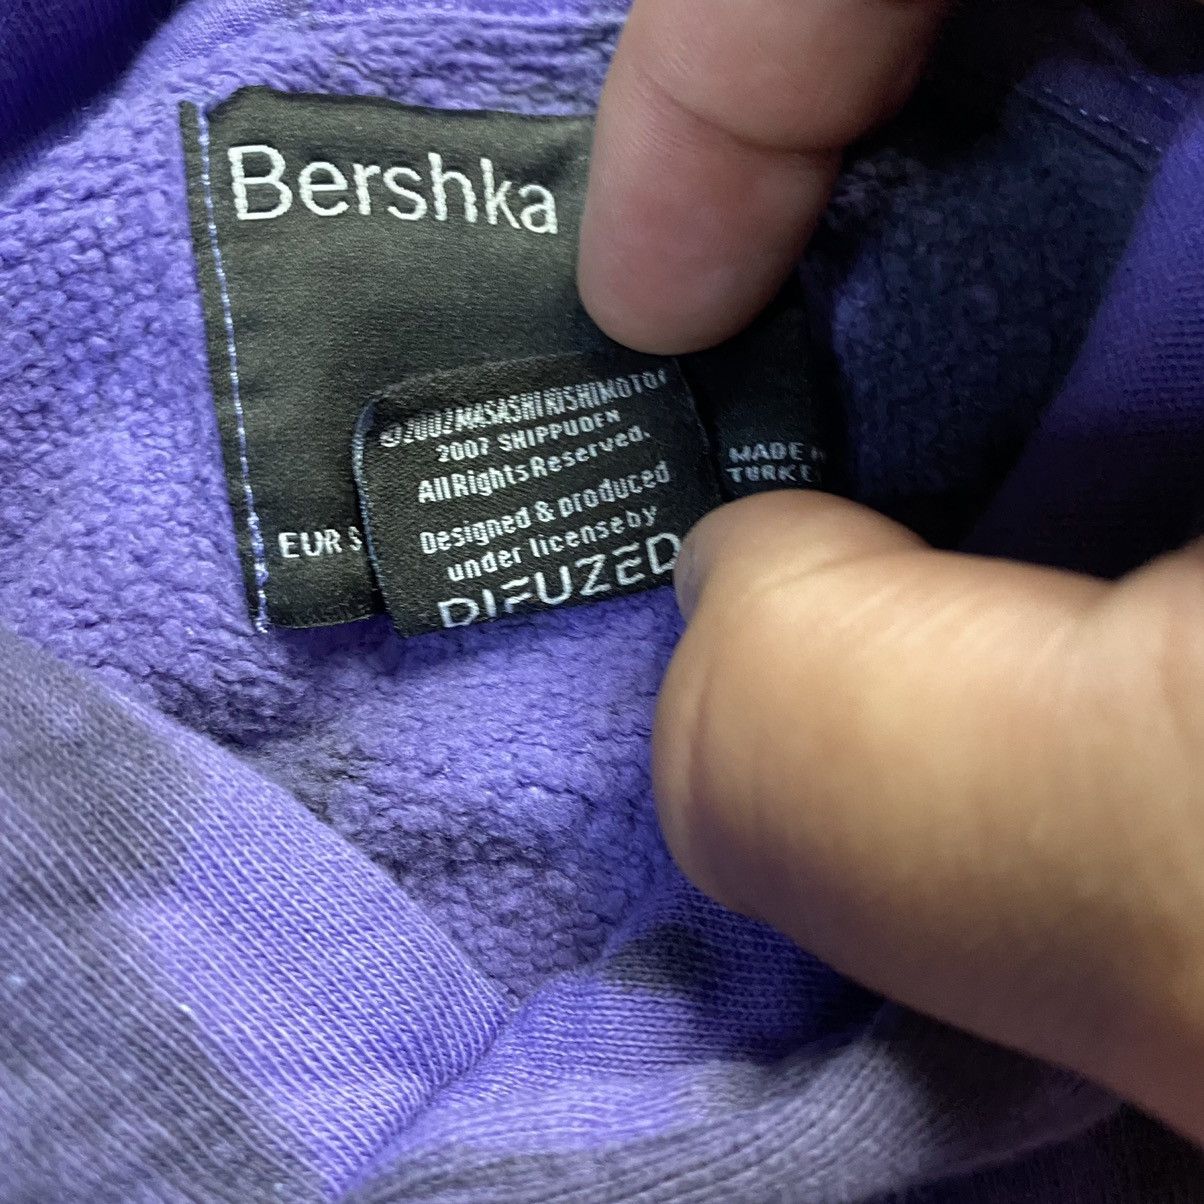 Bershka Bershka Naruto Shippuden Sasuke Sharingan Tie Dye Hoodie Size US S / EU 44-46 / 1 - 4 Thumbnail